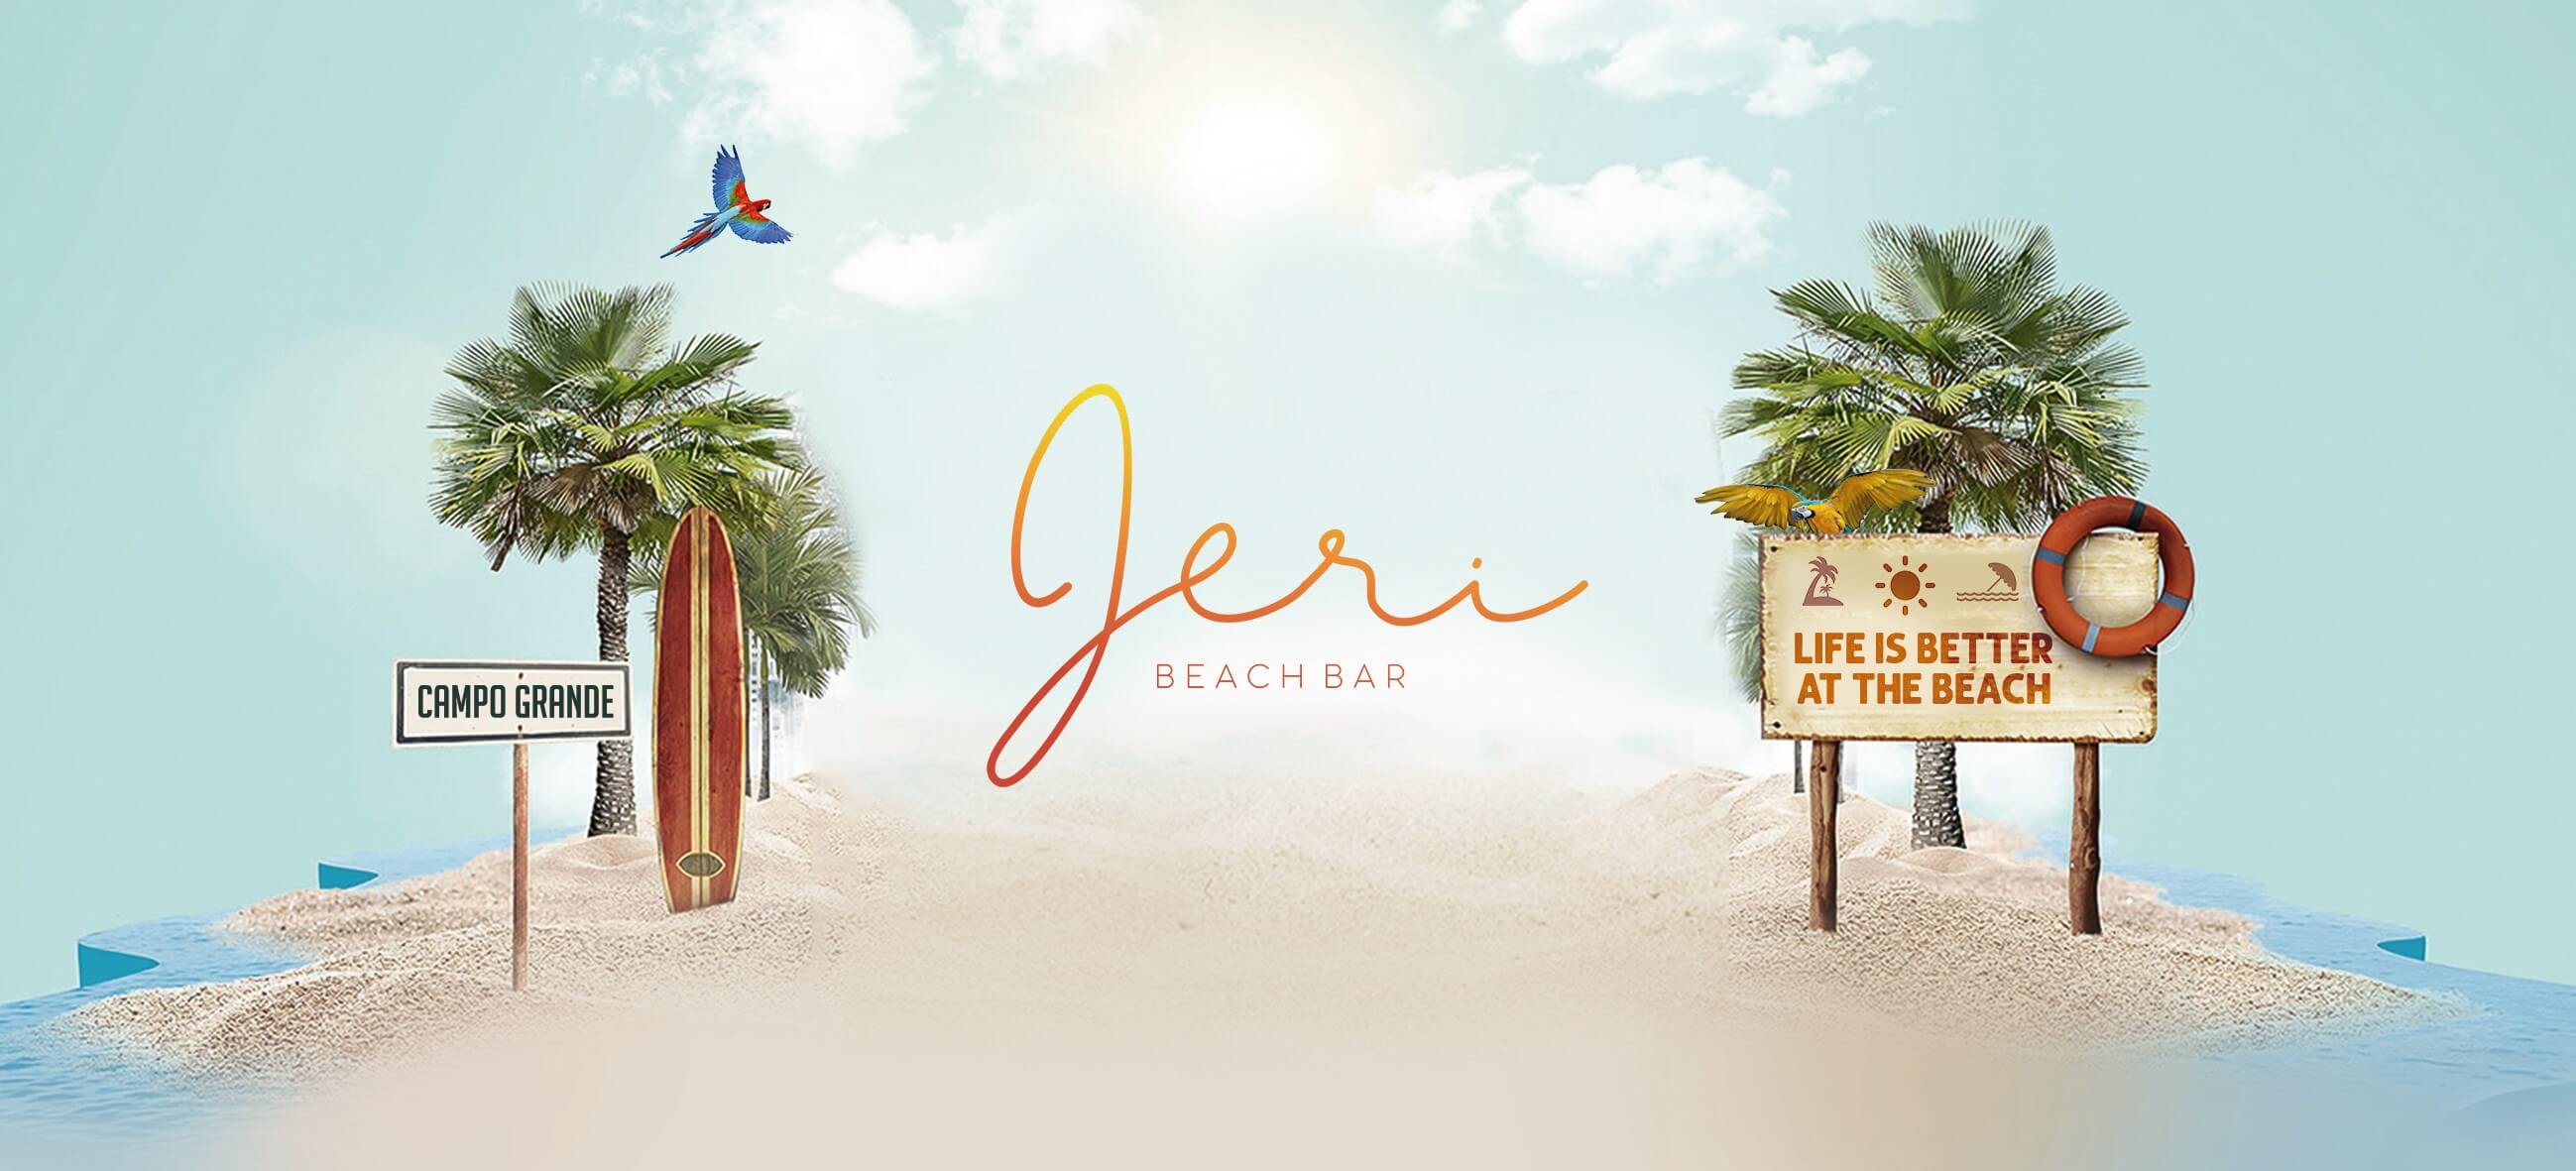 Jeri Beach Bar slide 0